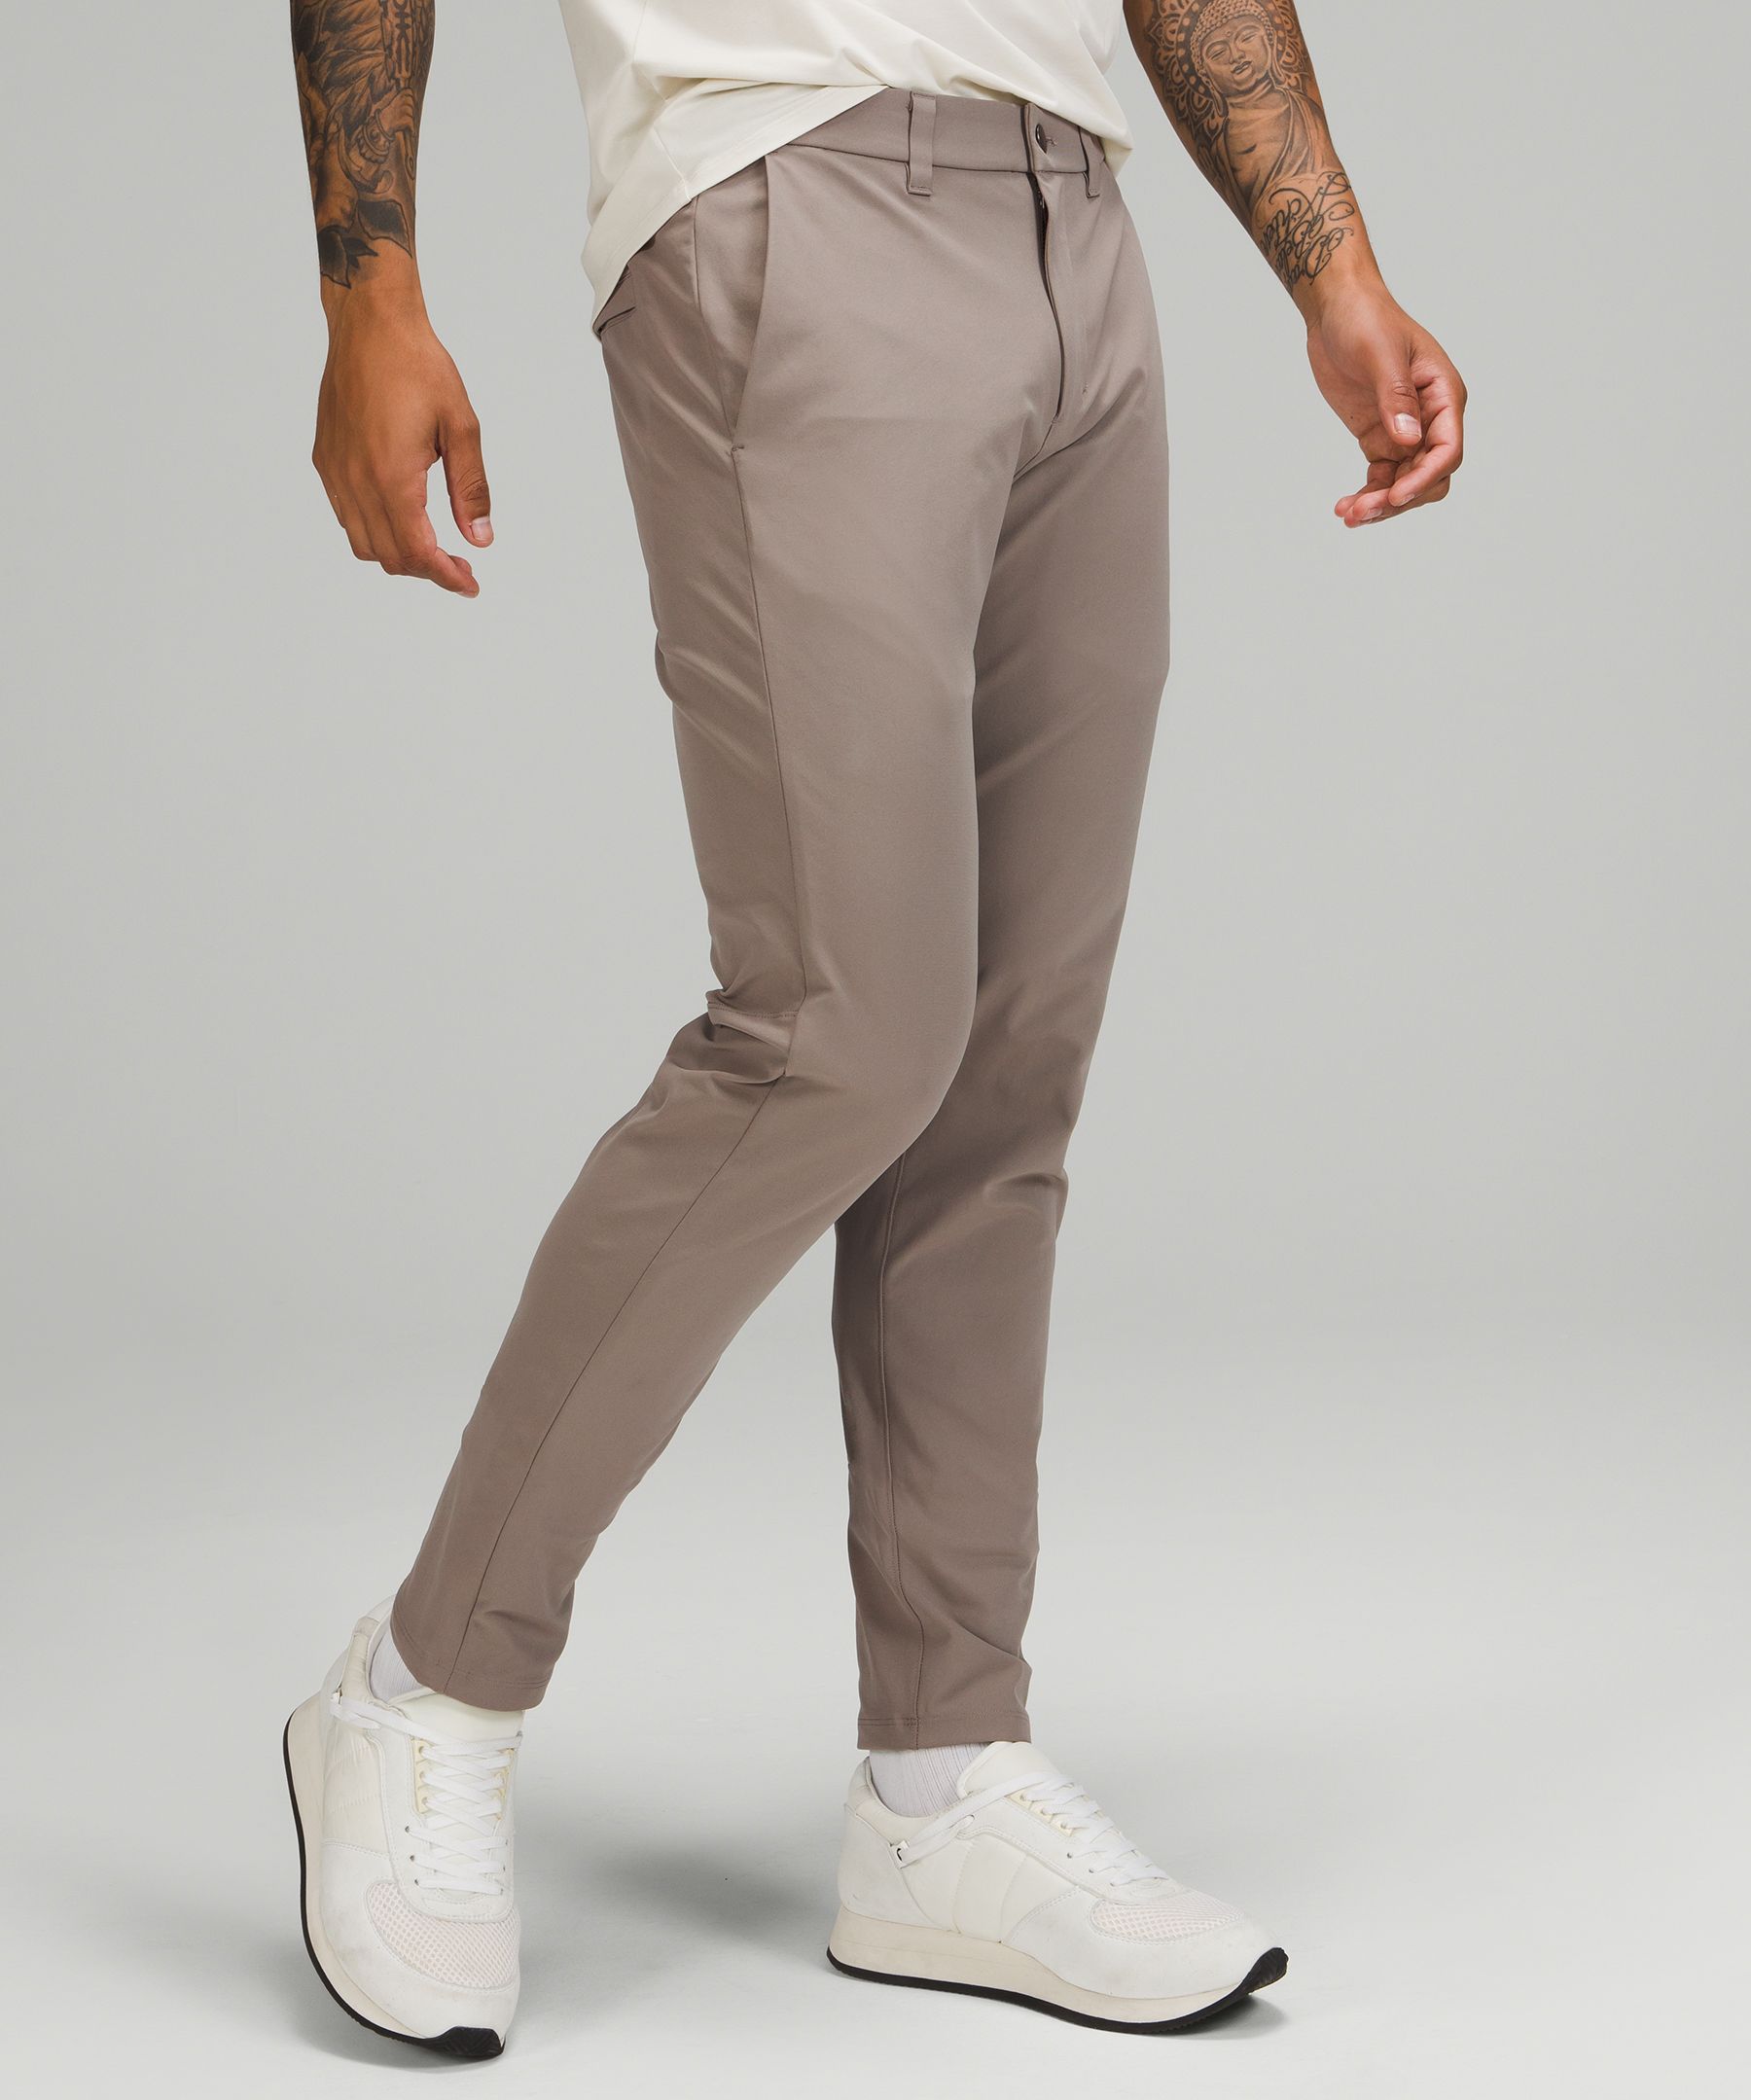 Lululemon Commission Slim-fit Pants 30" Warpstreme In Carbon Dust